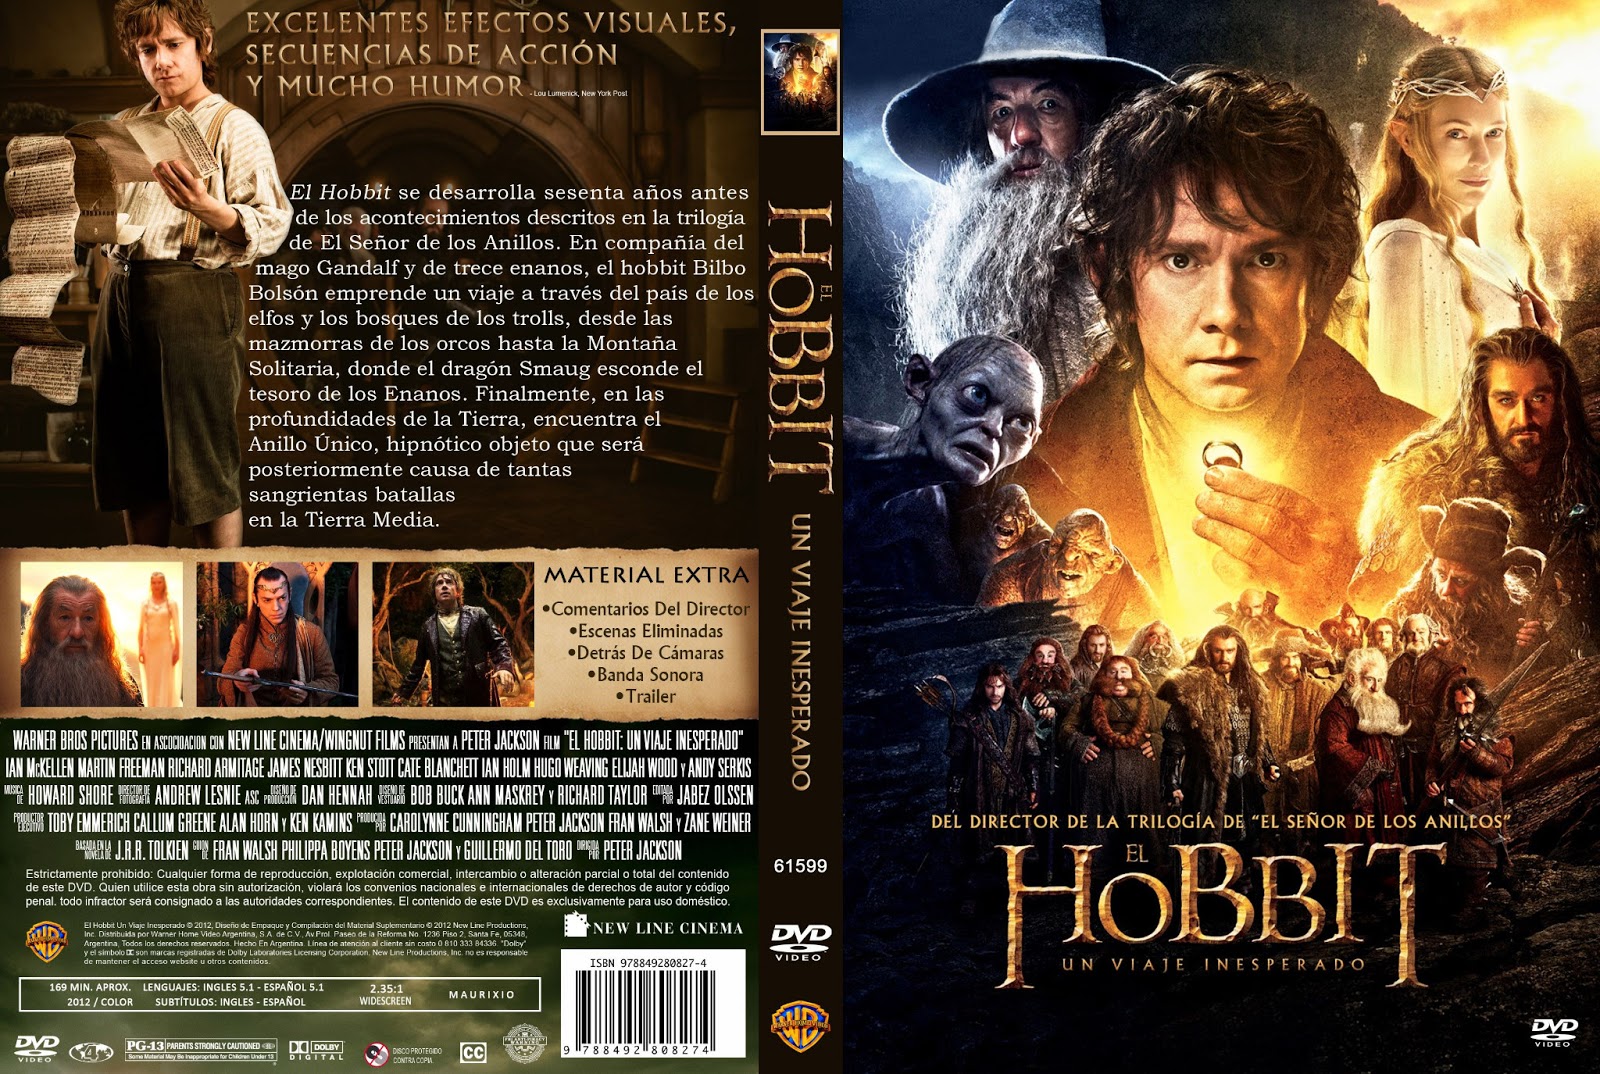 [Rafa & Haunter Preguntan] ¿Cual fue la Ultima Pelicula que Viste? - Página 4 El+Hobbit+Un+Viaje+Inesperado+Custom+V4+Por+Sorete22+-+dvd